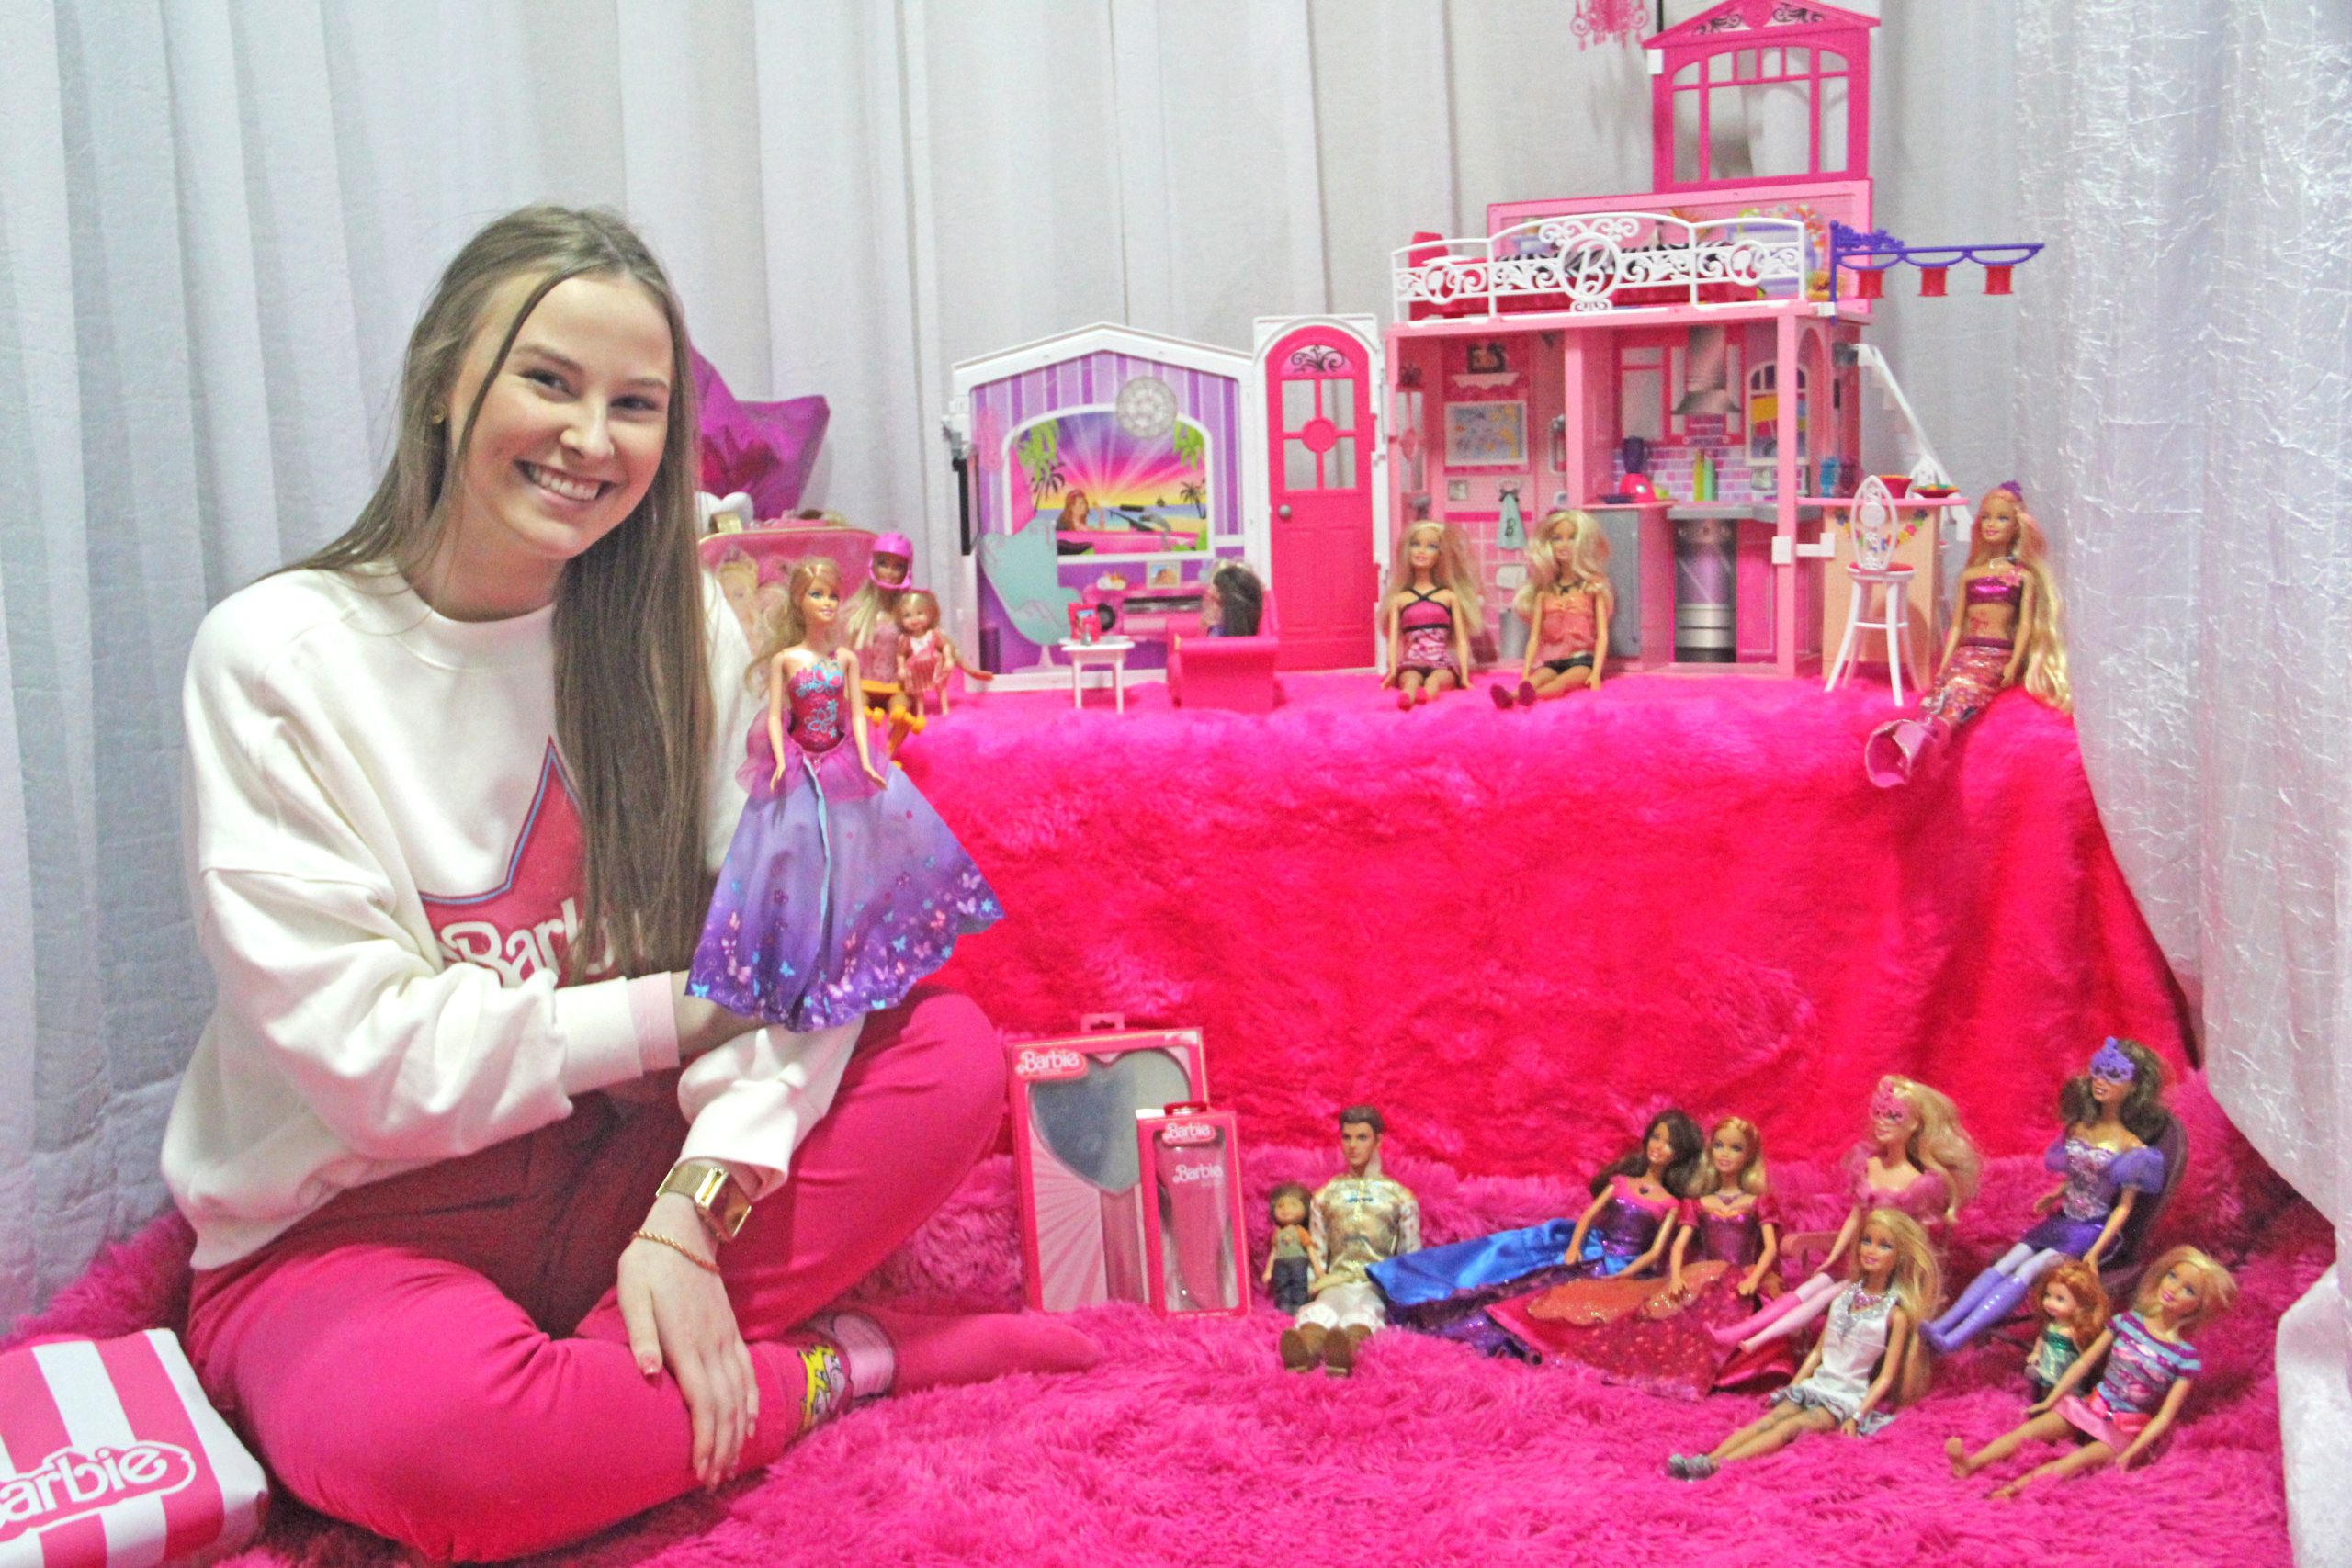 O Novo Filme Barbie Da Vida real De cosplay Infantil Com Mesmo